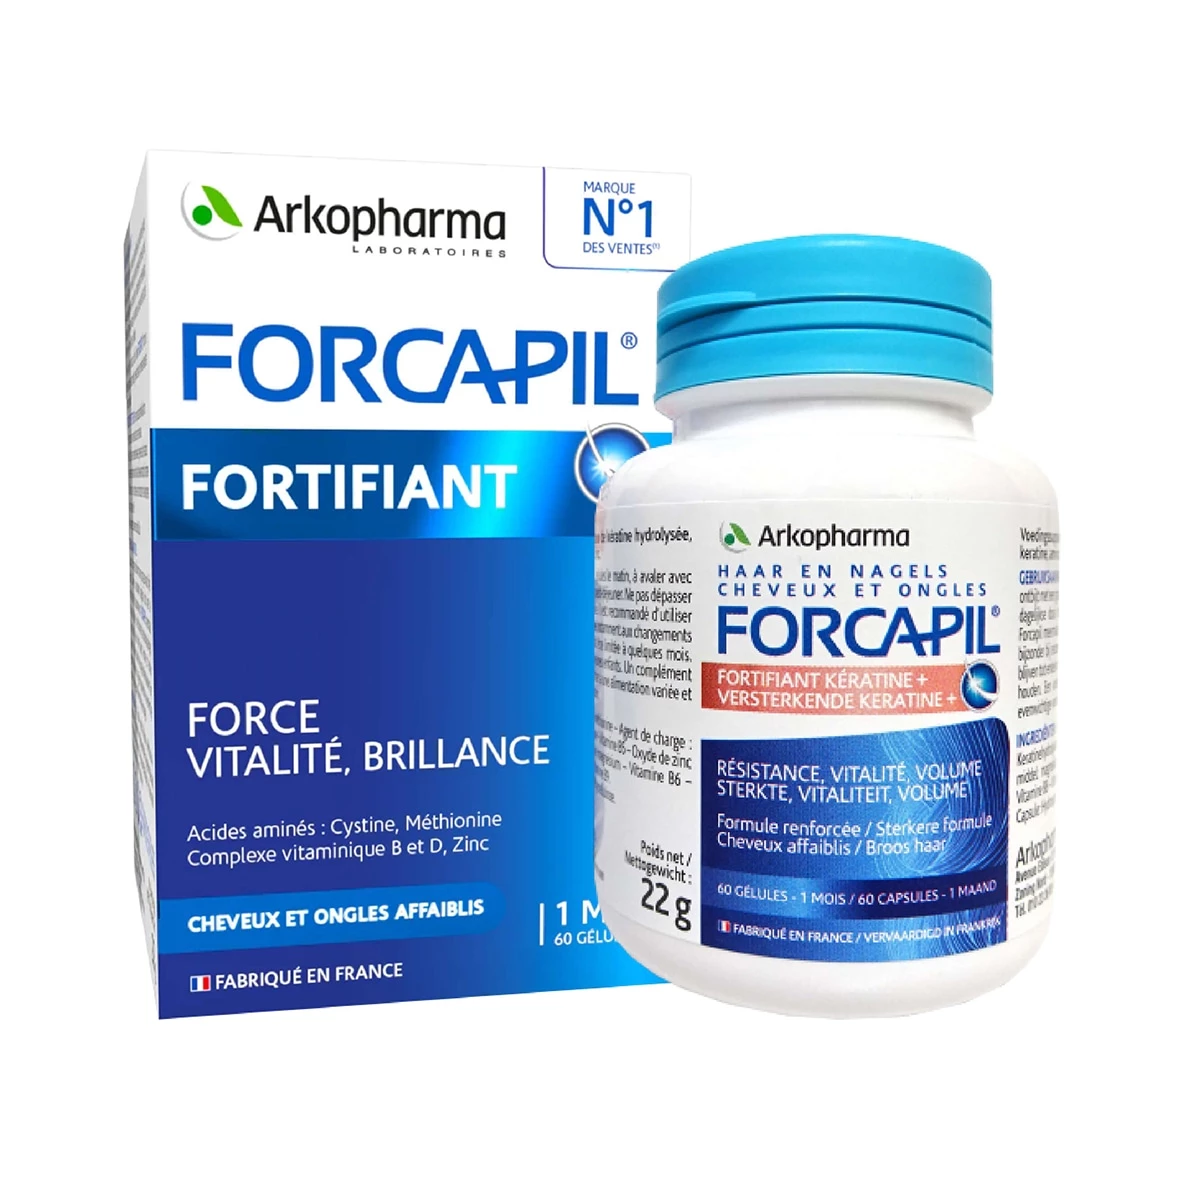 Arkopharma Forcapil Fortifiant - Hỗ trợ tóc chắc khỏe, giảm gãy rụng